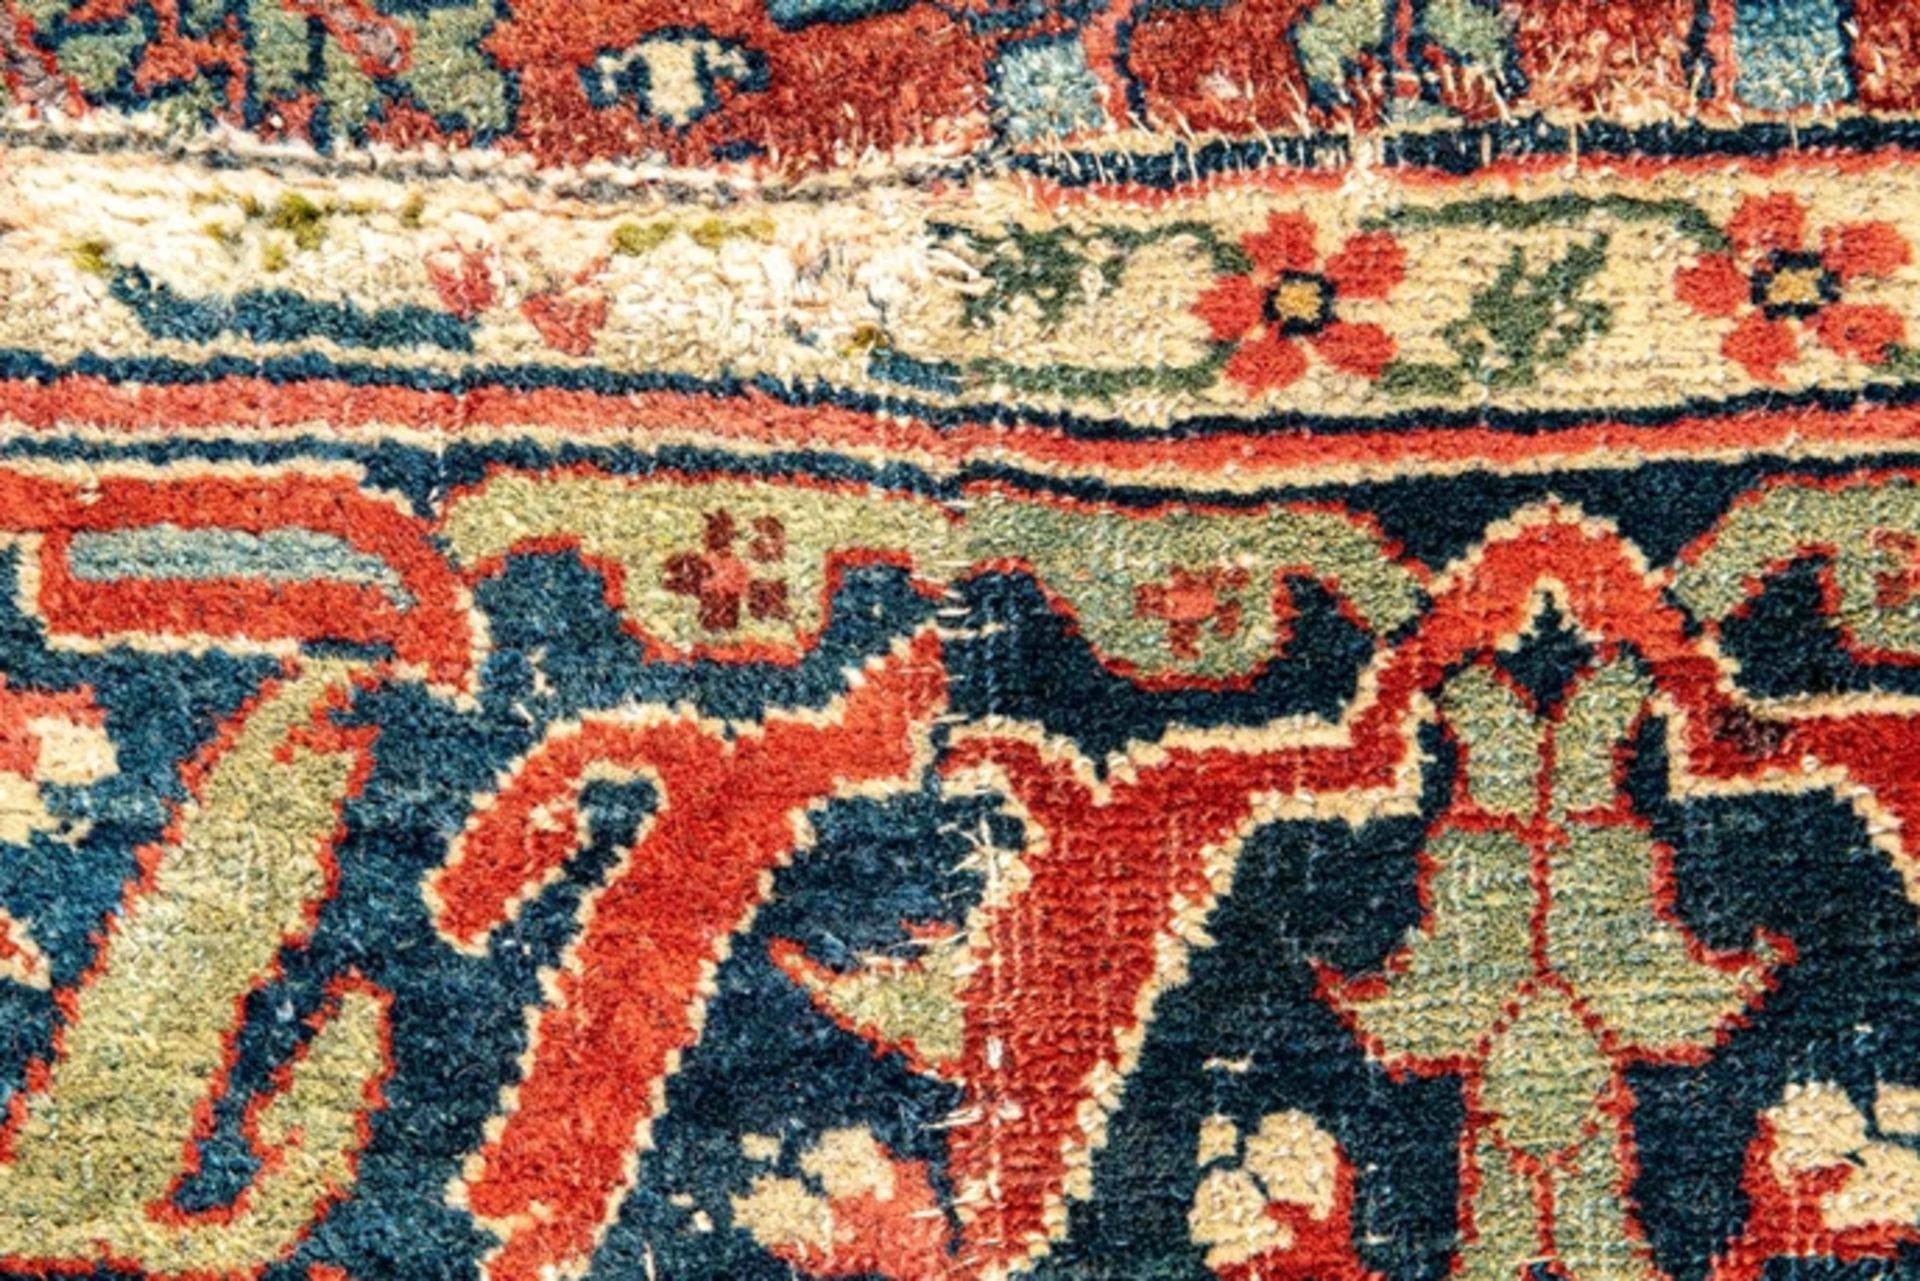 Früher nordwestpersischer Teppich, Mitte 18. Jhdt. oder früher. Format ca. 480 x 232 cm. Schafschur - Image 27 of 27